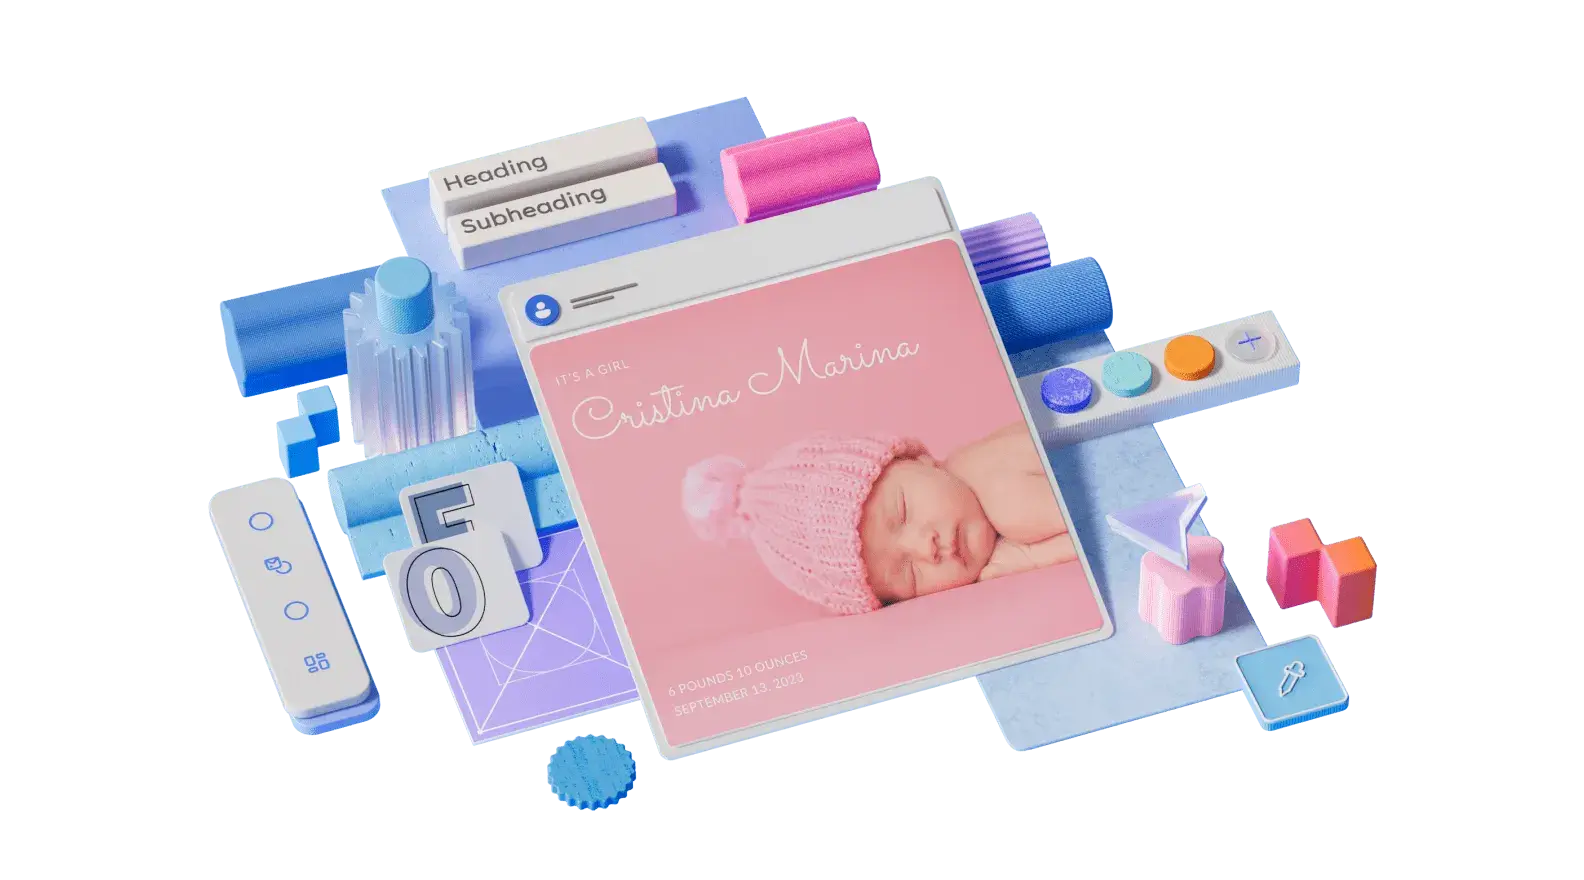 Vorlage "Geburtsankündigung", umgeben von 3D-dargestellten Designelementen